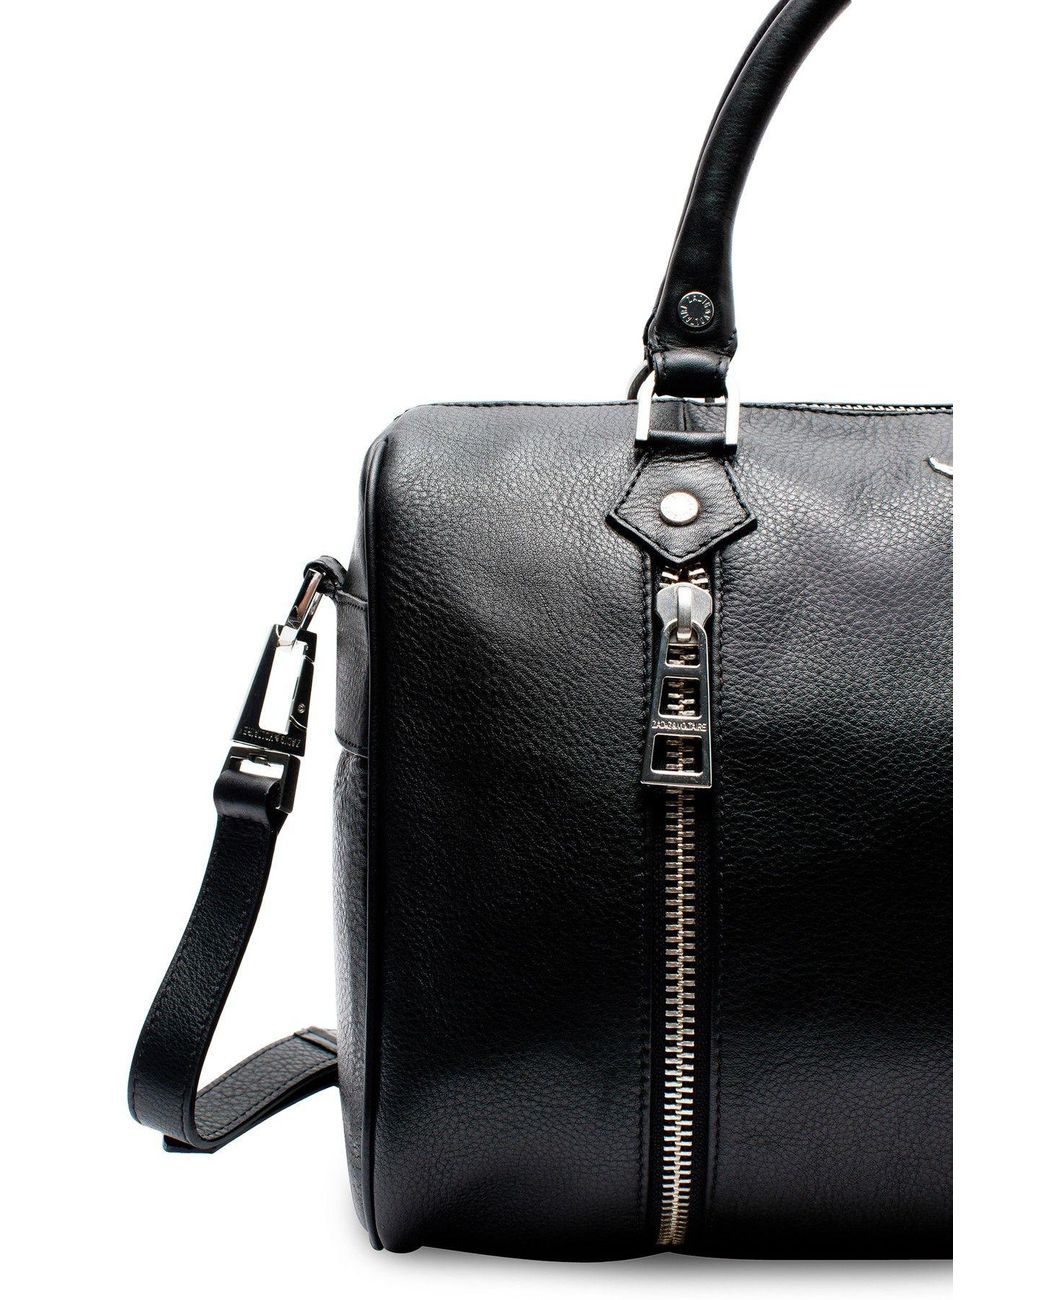 Zadig & Voltaire Sunny Medium Bag in Black | Lyst